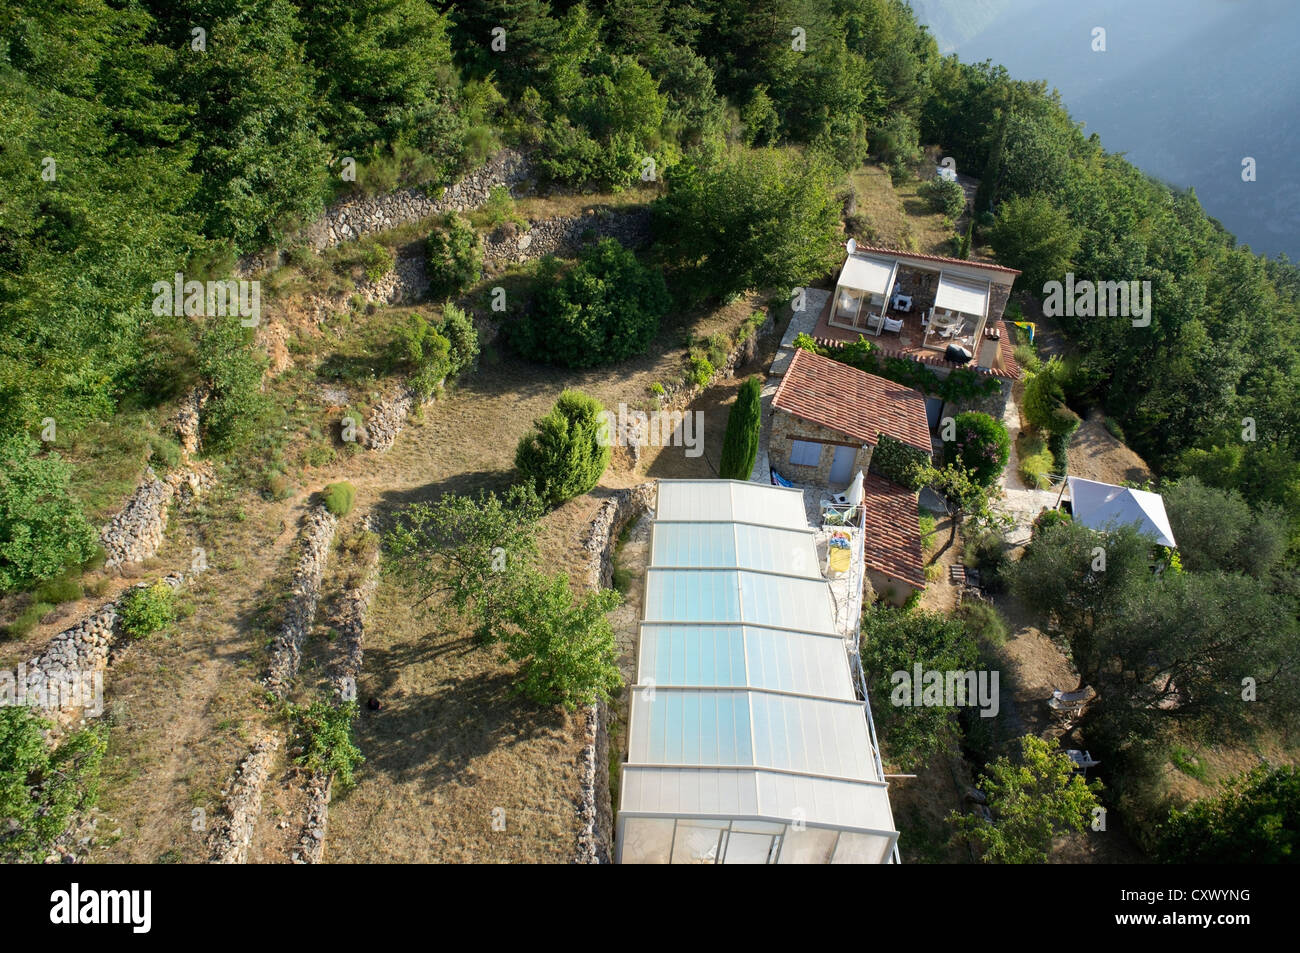 Maison avec une piscine couverte dans les montagnes, vue aérienne, sud de la France Banque D'Images